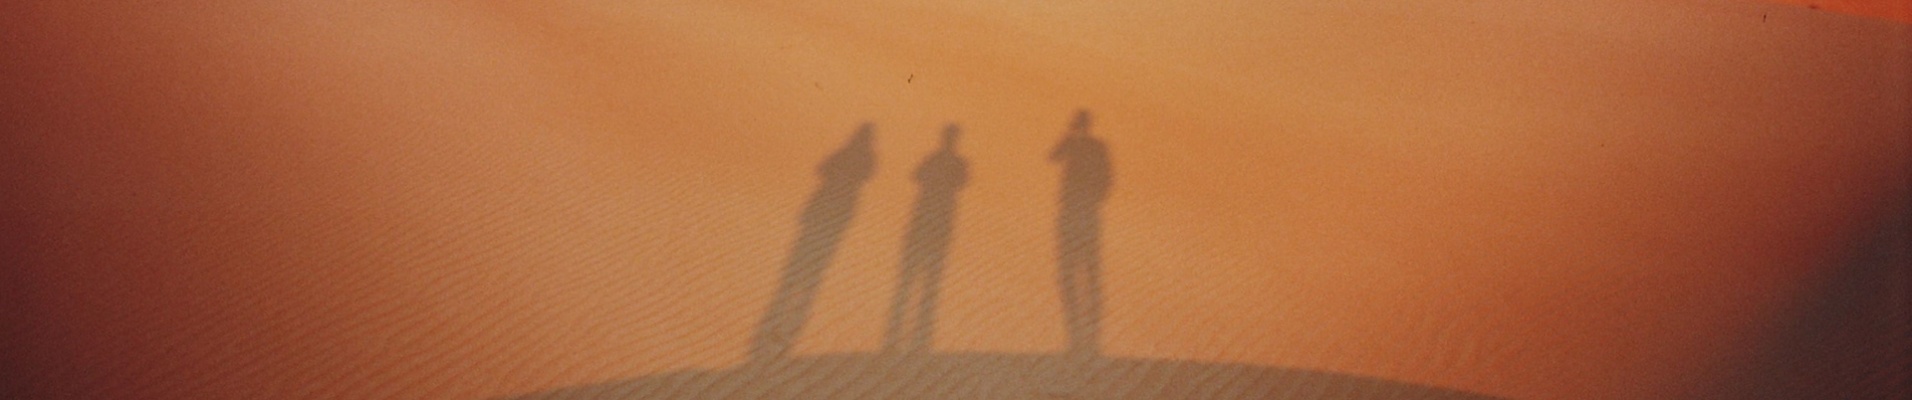 qui sommes nous ombres désert oman